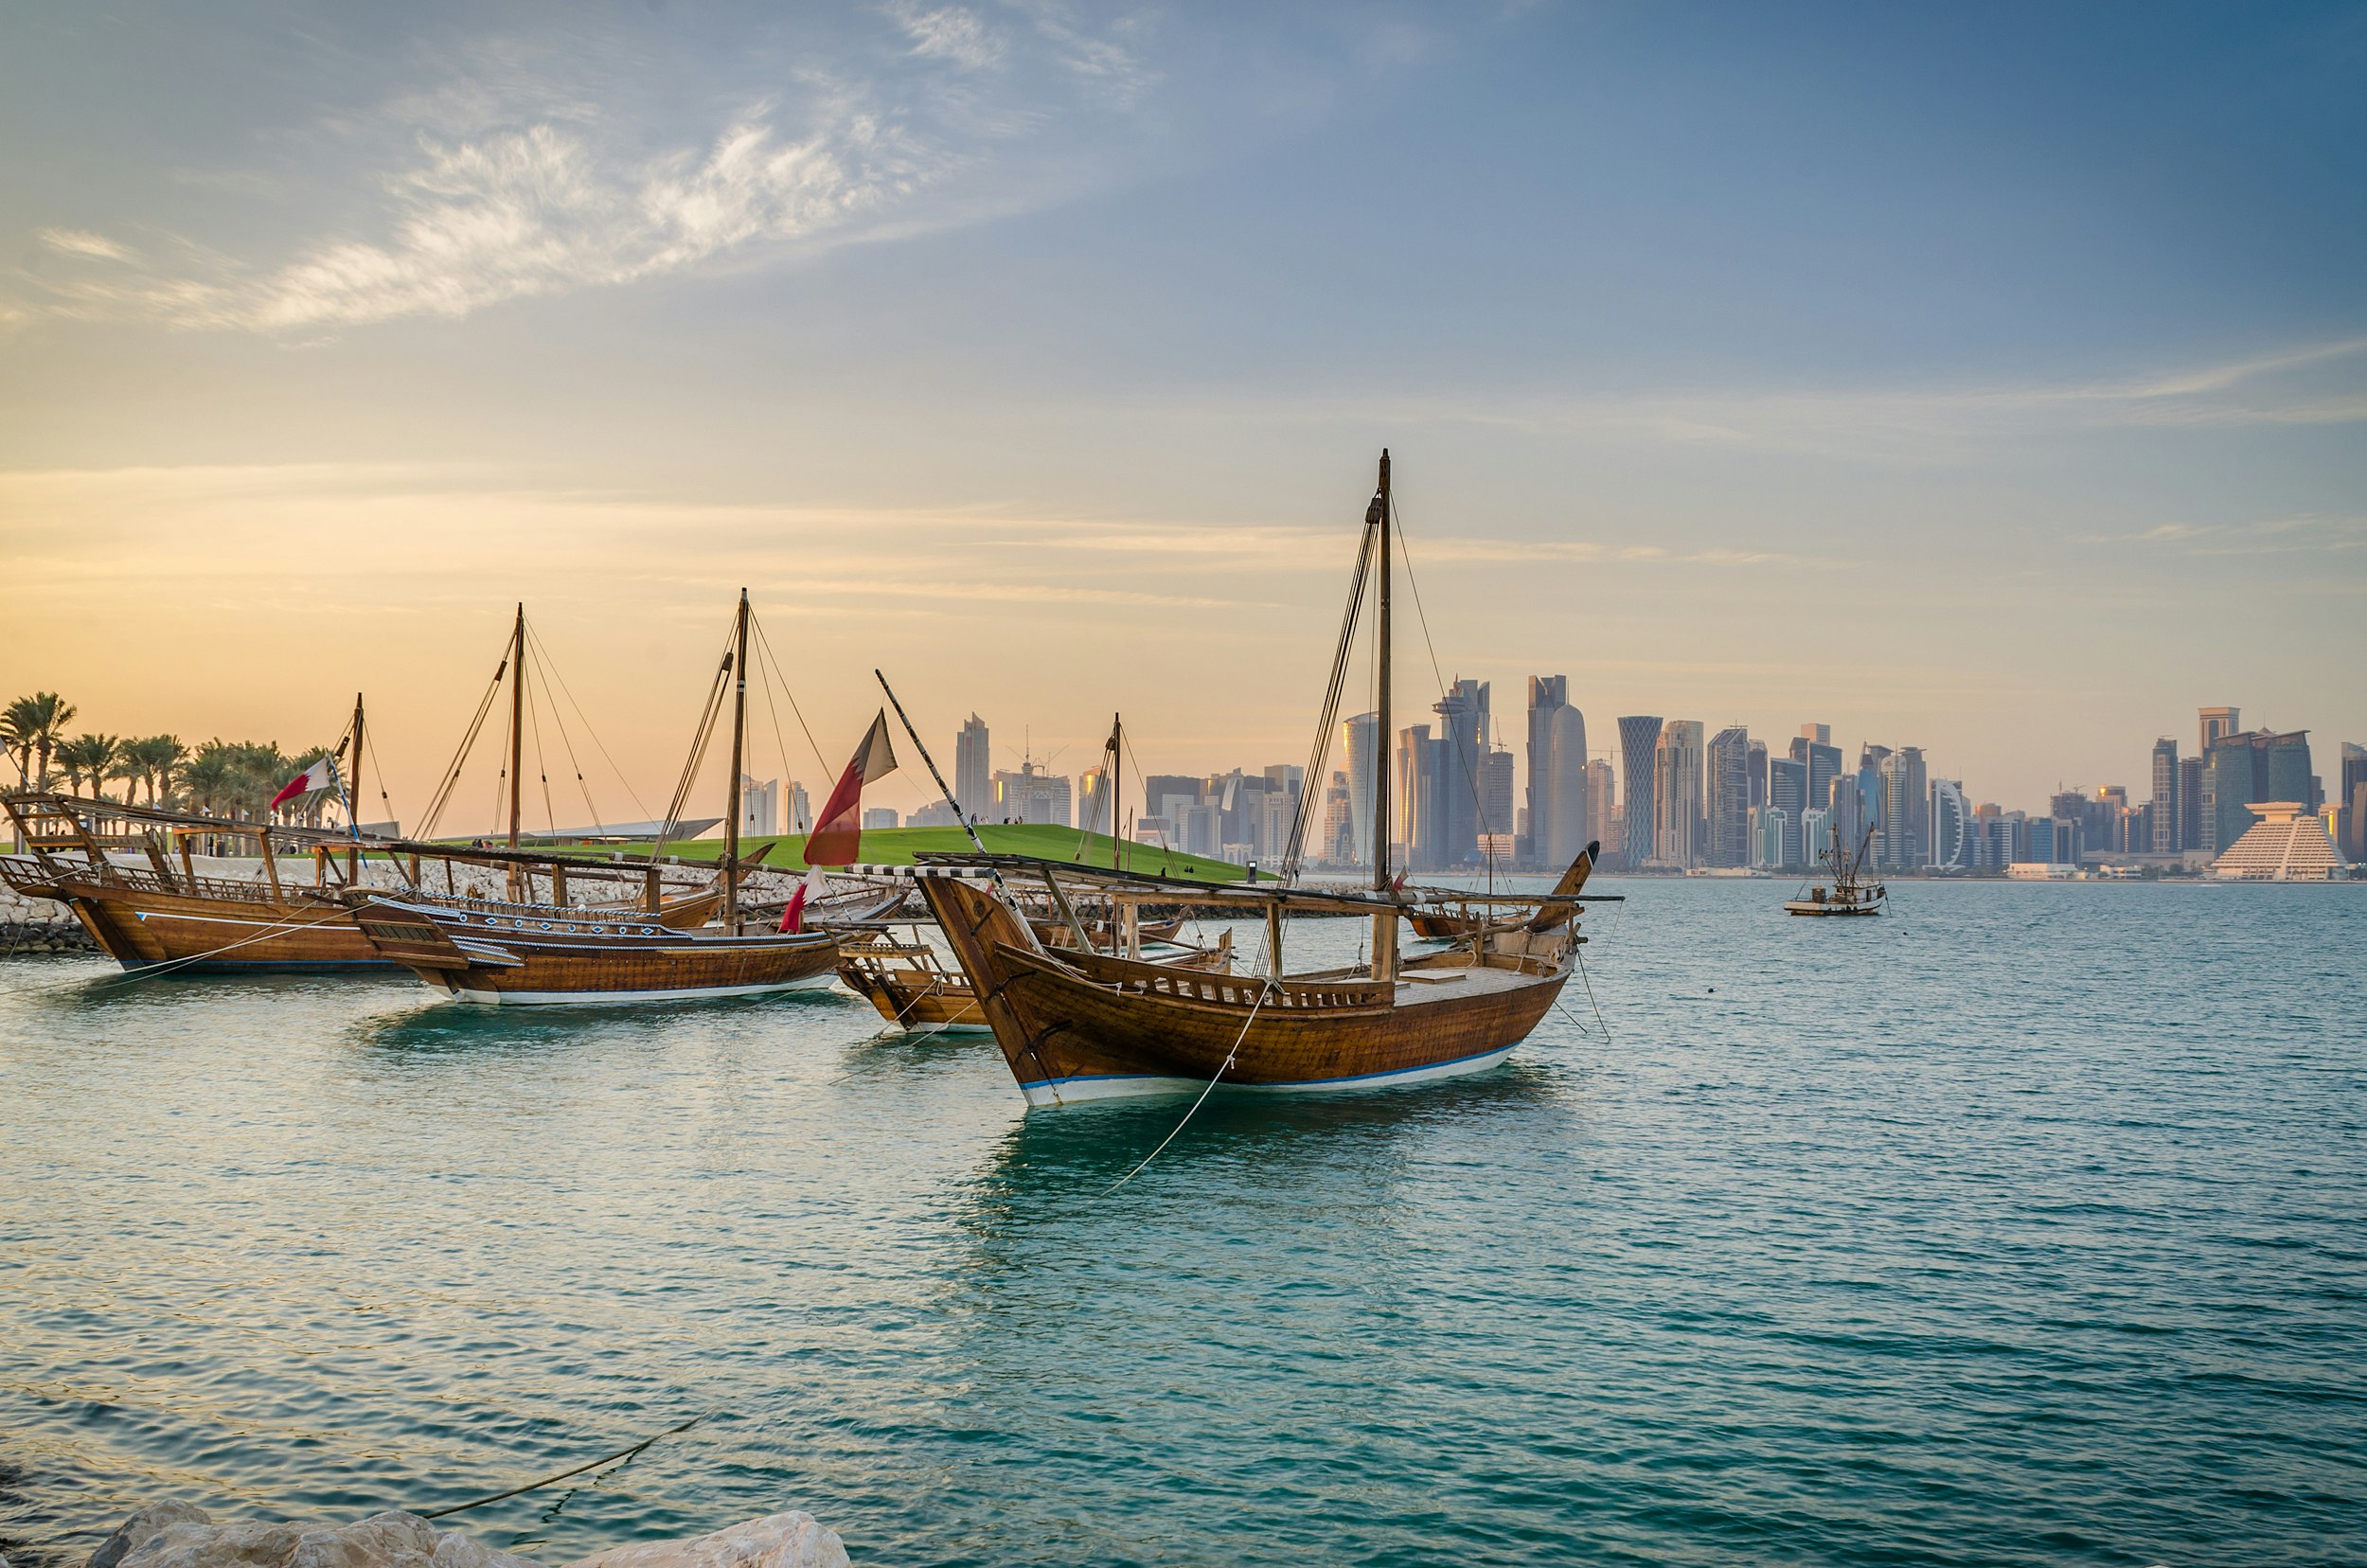 Qatar_Al-Jassasiya_dhows.jpg